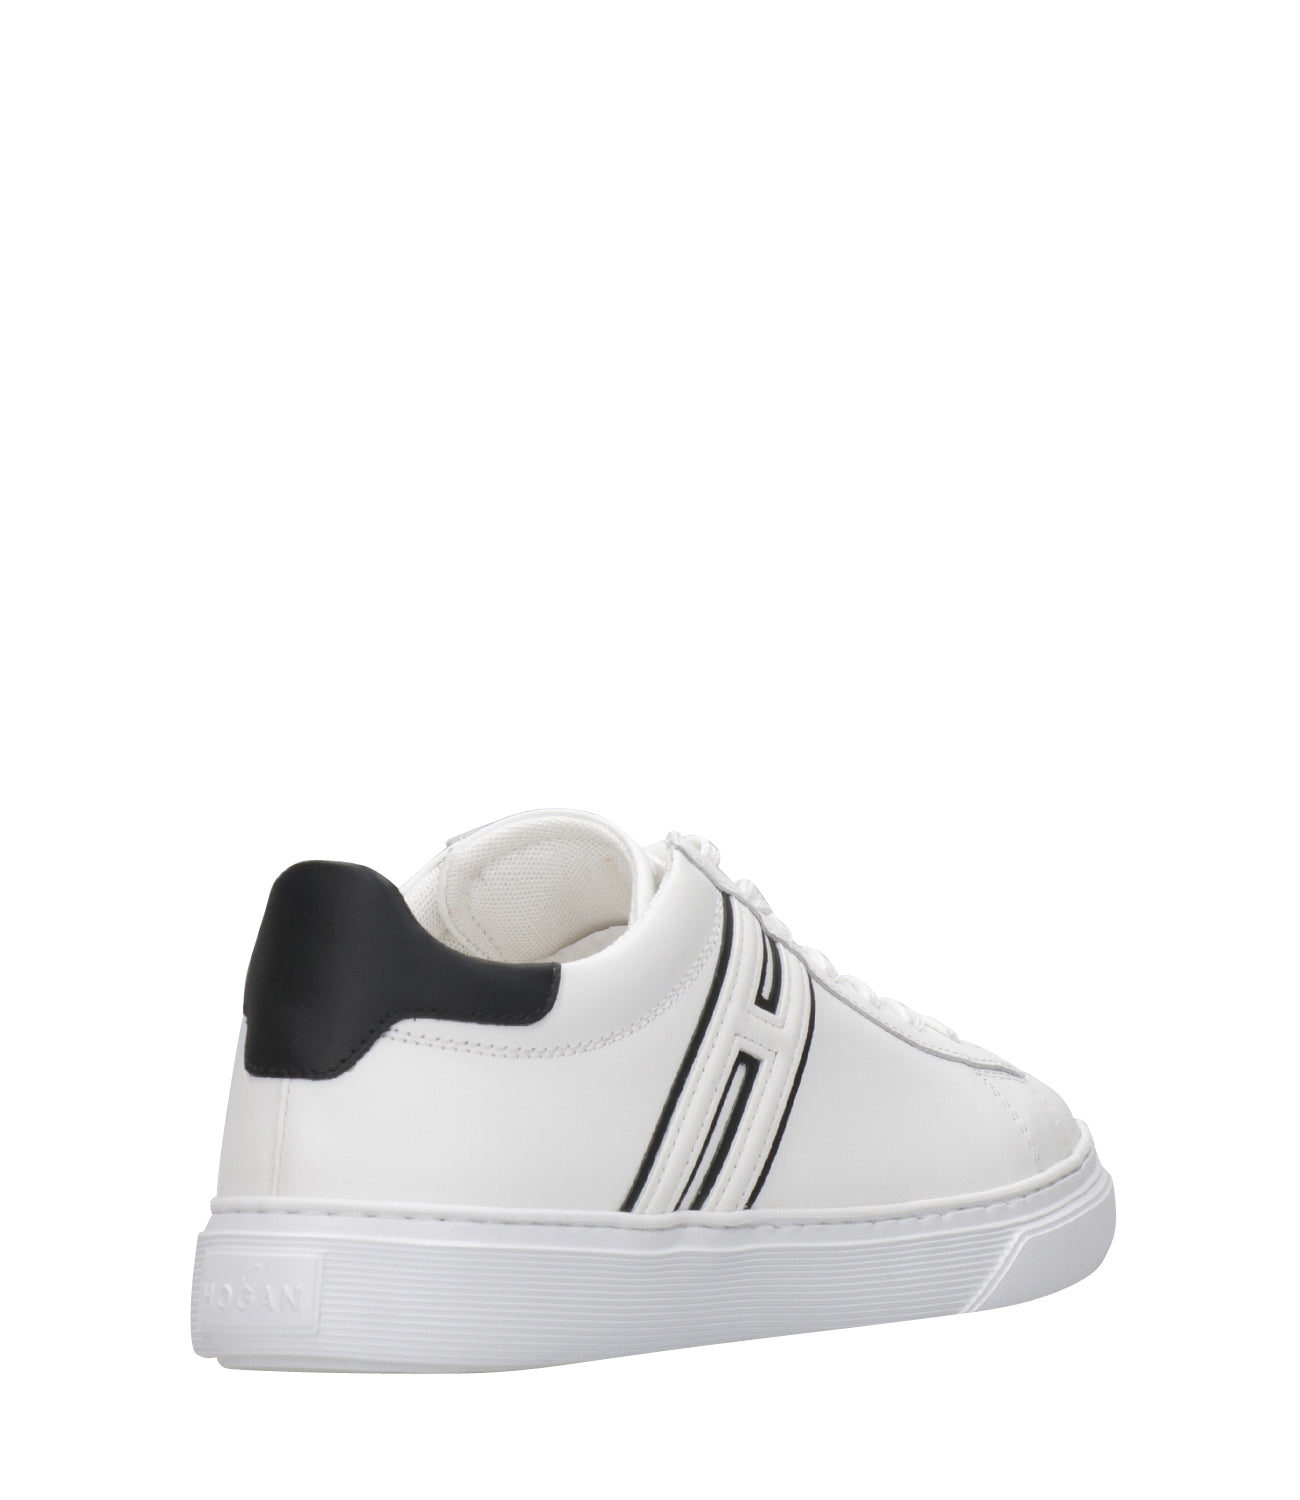 Hogan | Sneakers H365 Allacciato H Canaletto Bianco e Nero